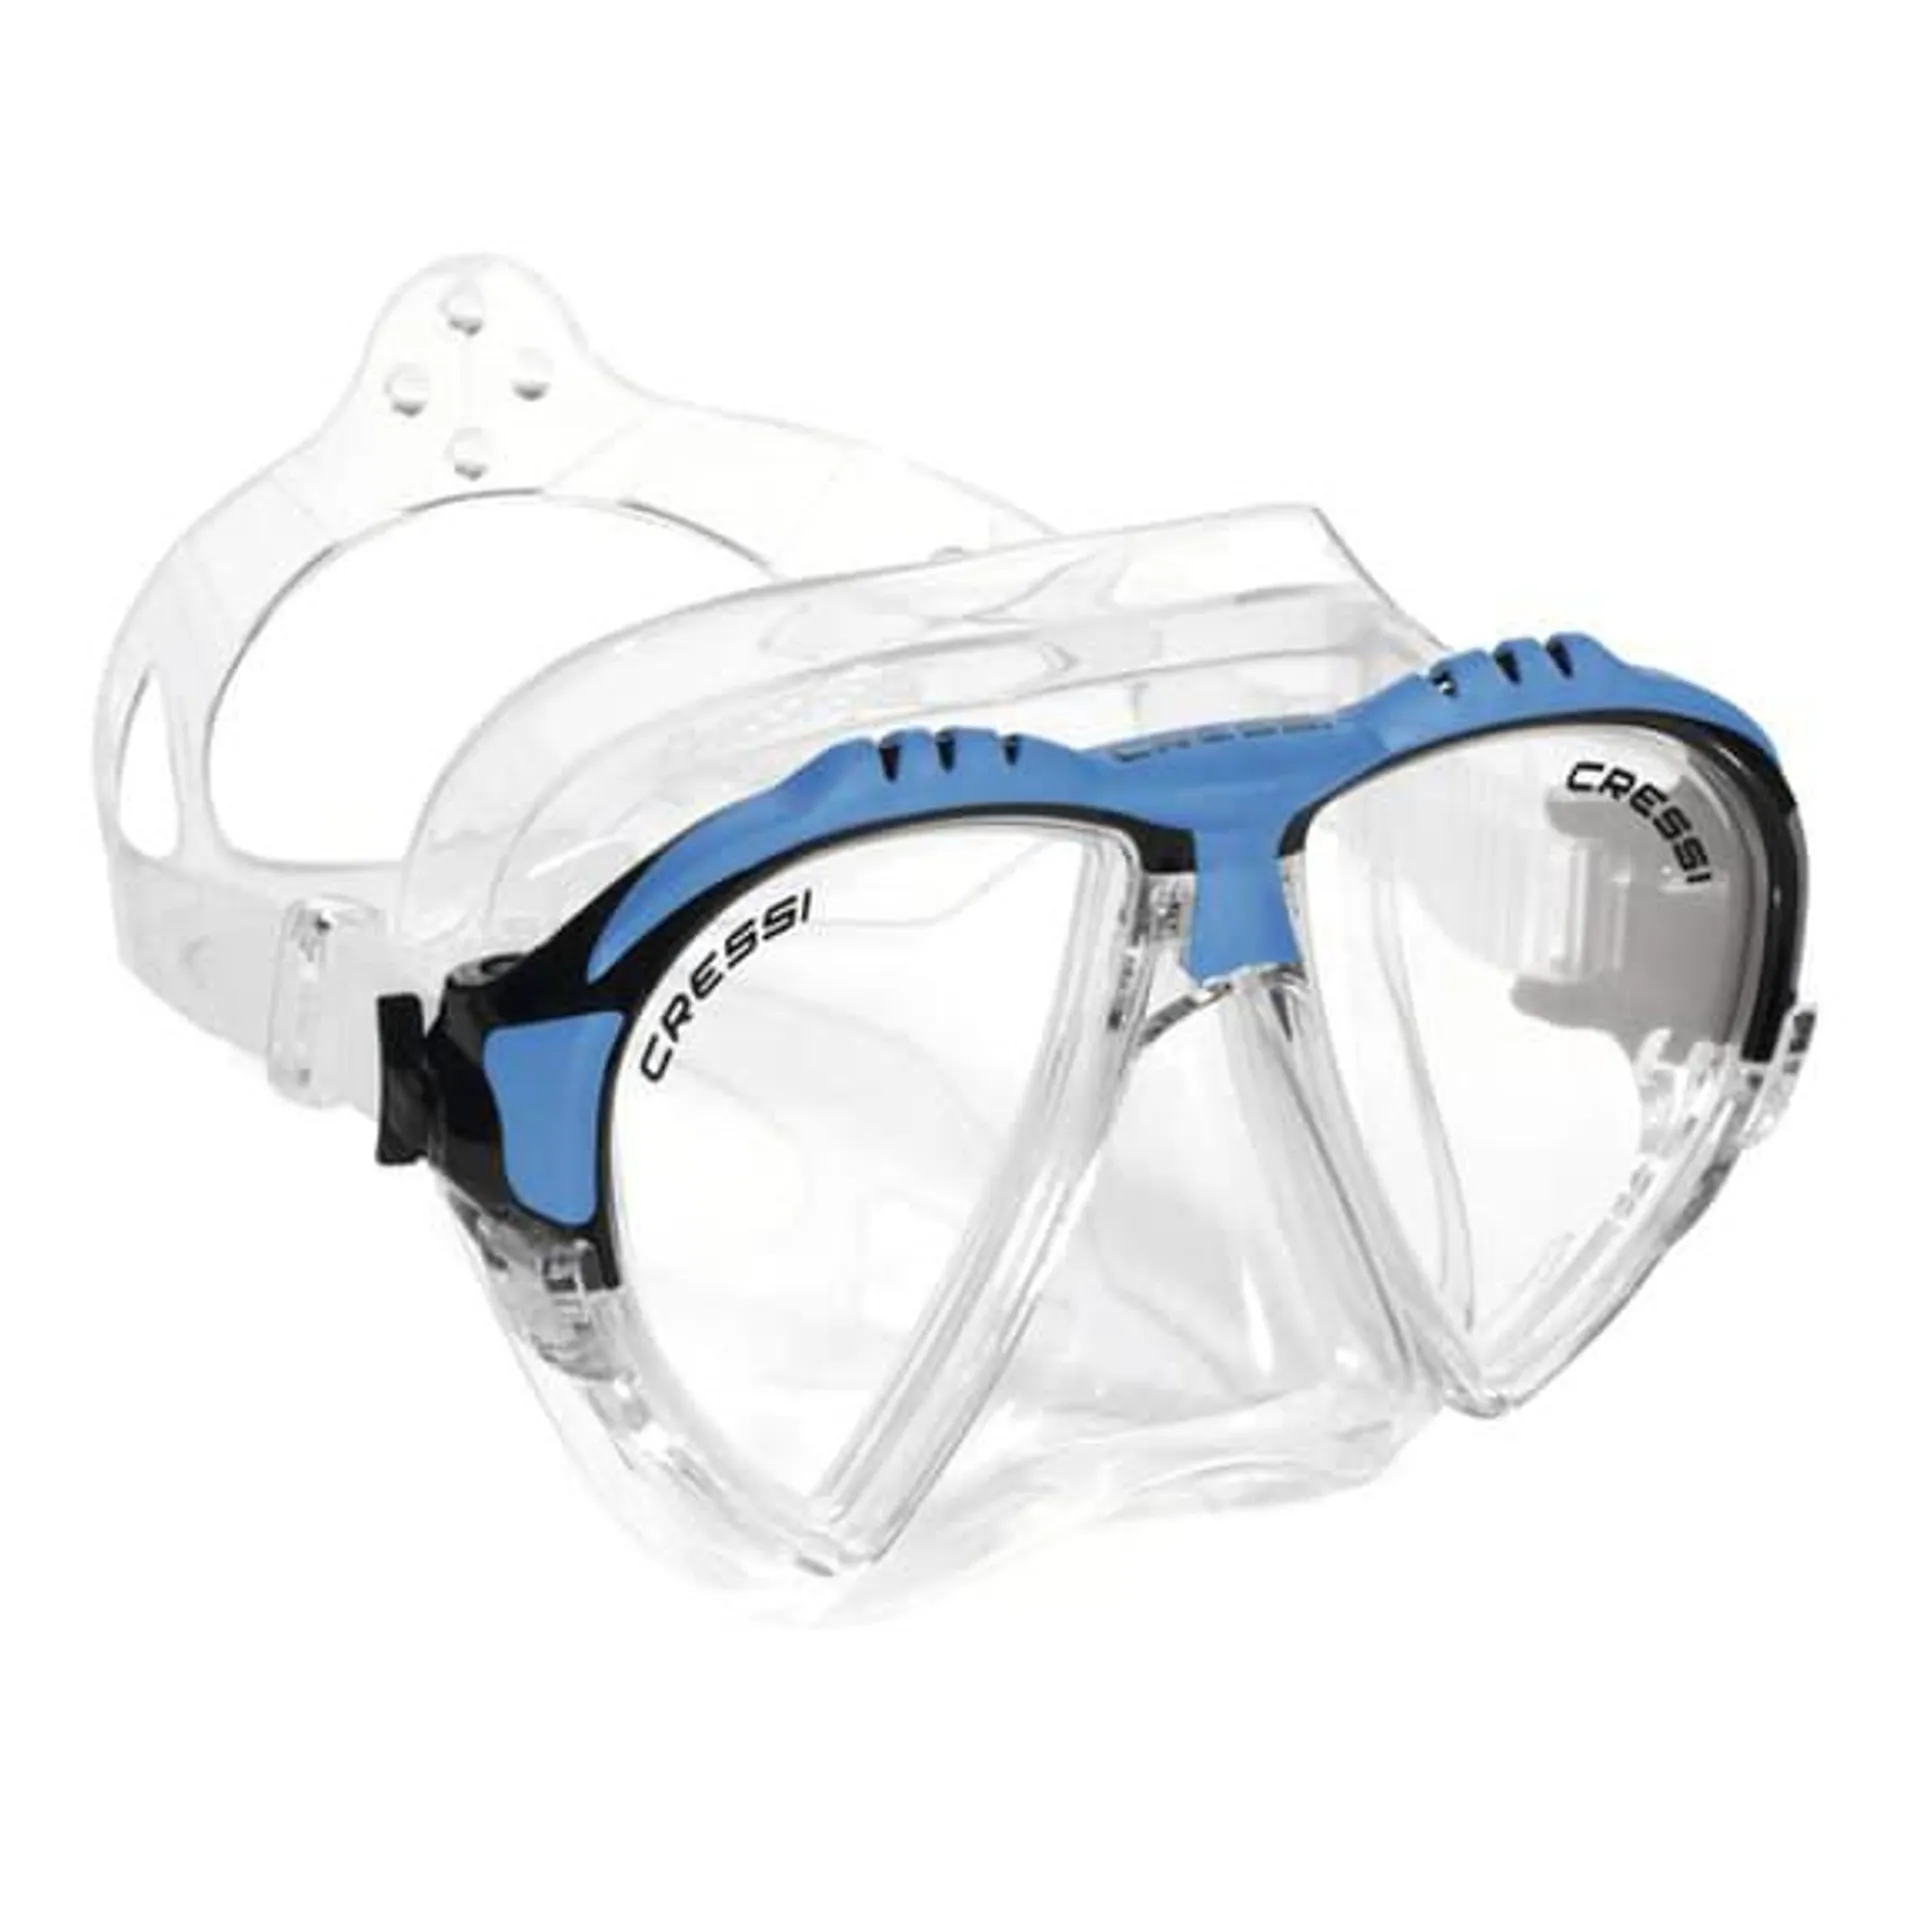 Masque de plongée Cressi Matrix blanc bleu noir avec verres transparents